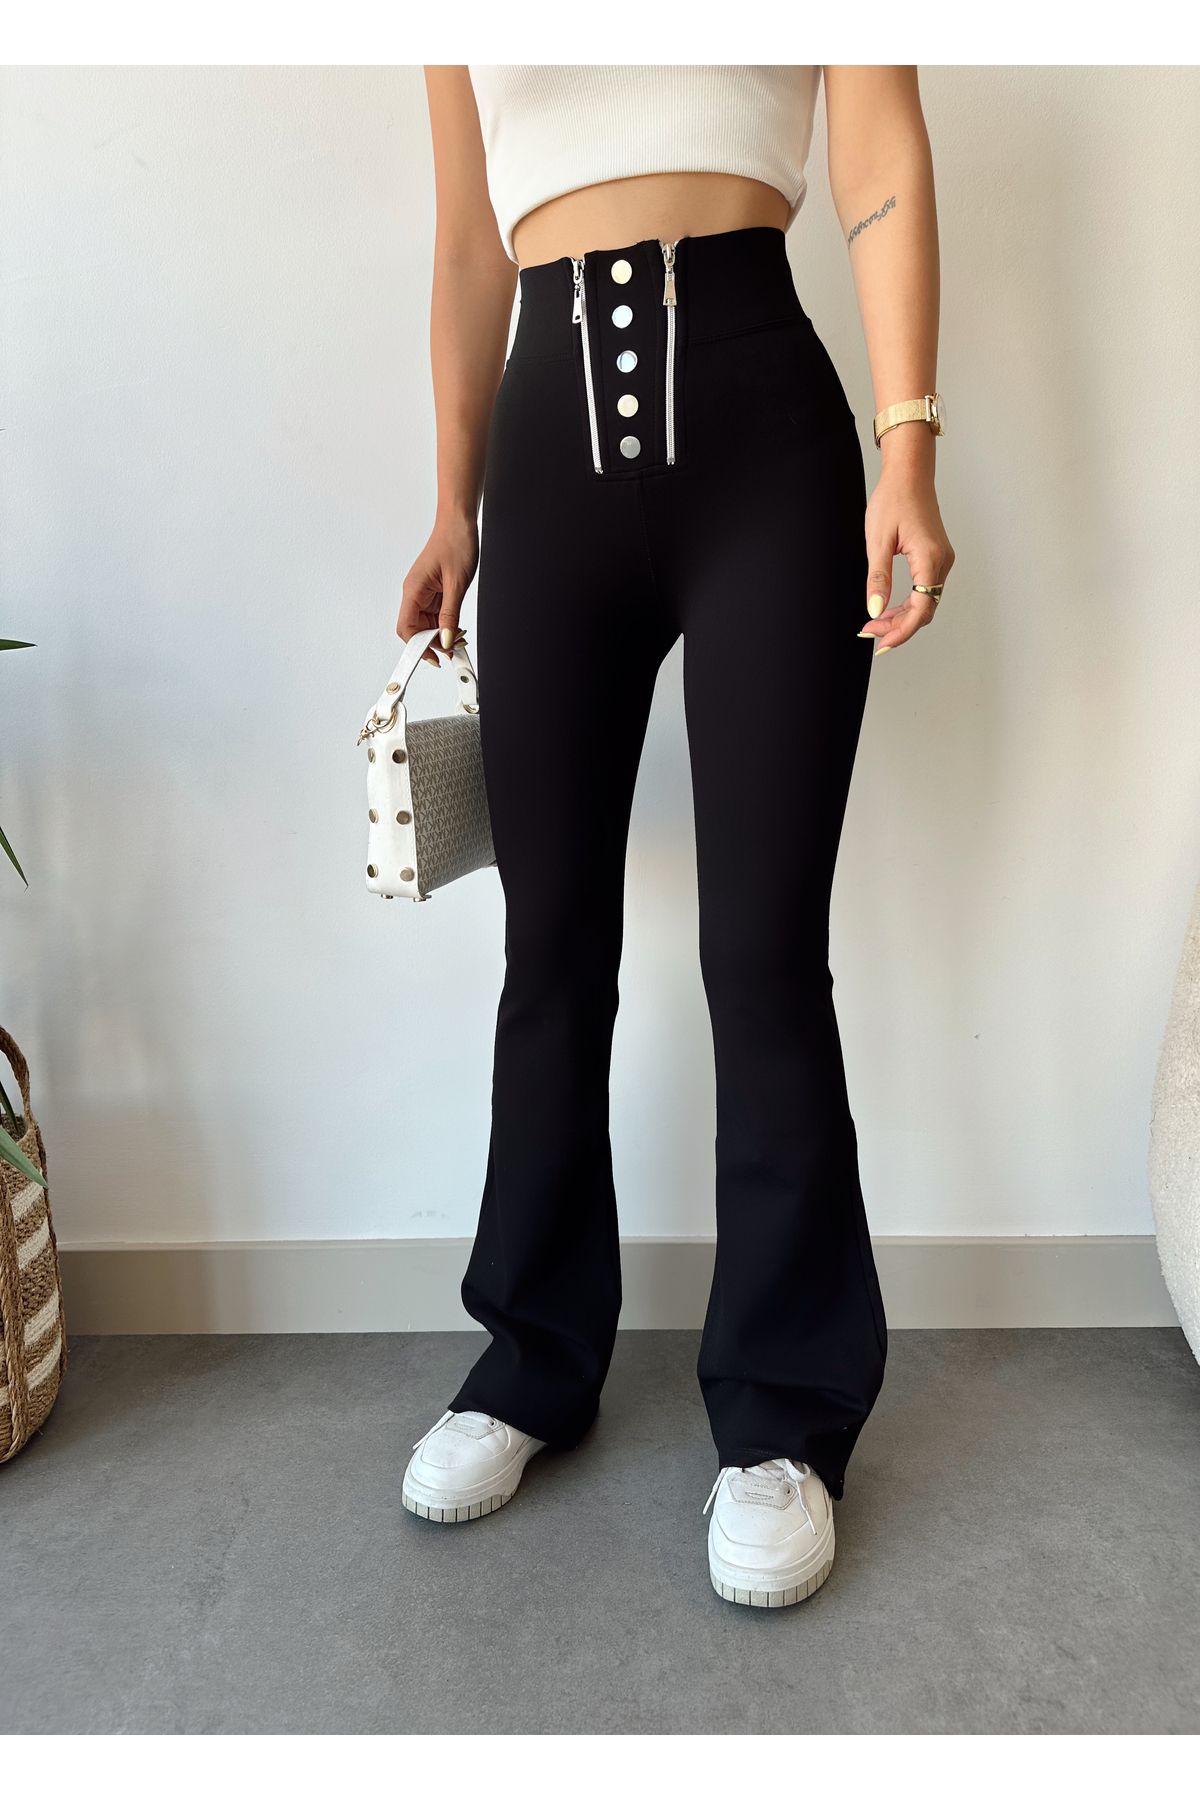 Undeka Store Kadın Fermuar Çıtçıt Detaylı Çelik Toparlayıcı Ispanyol Paça Pantolon